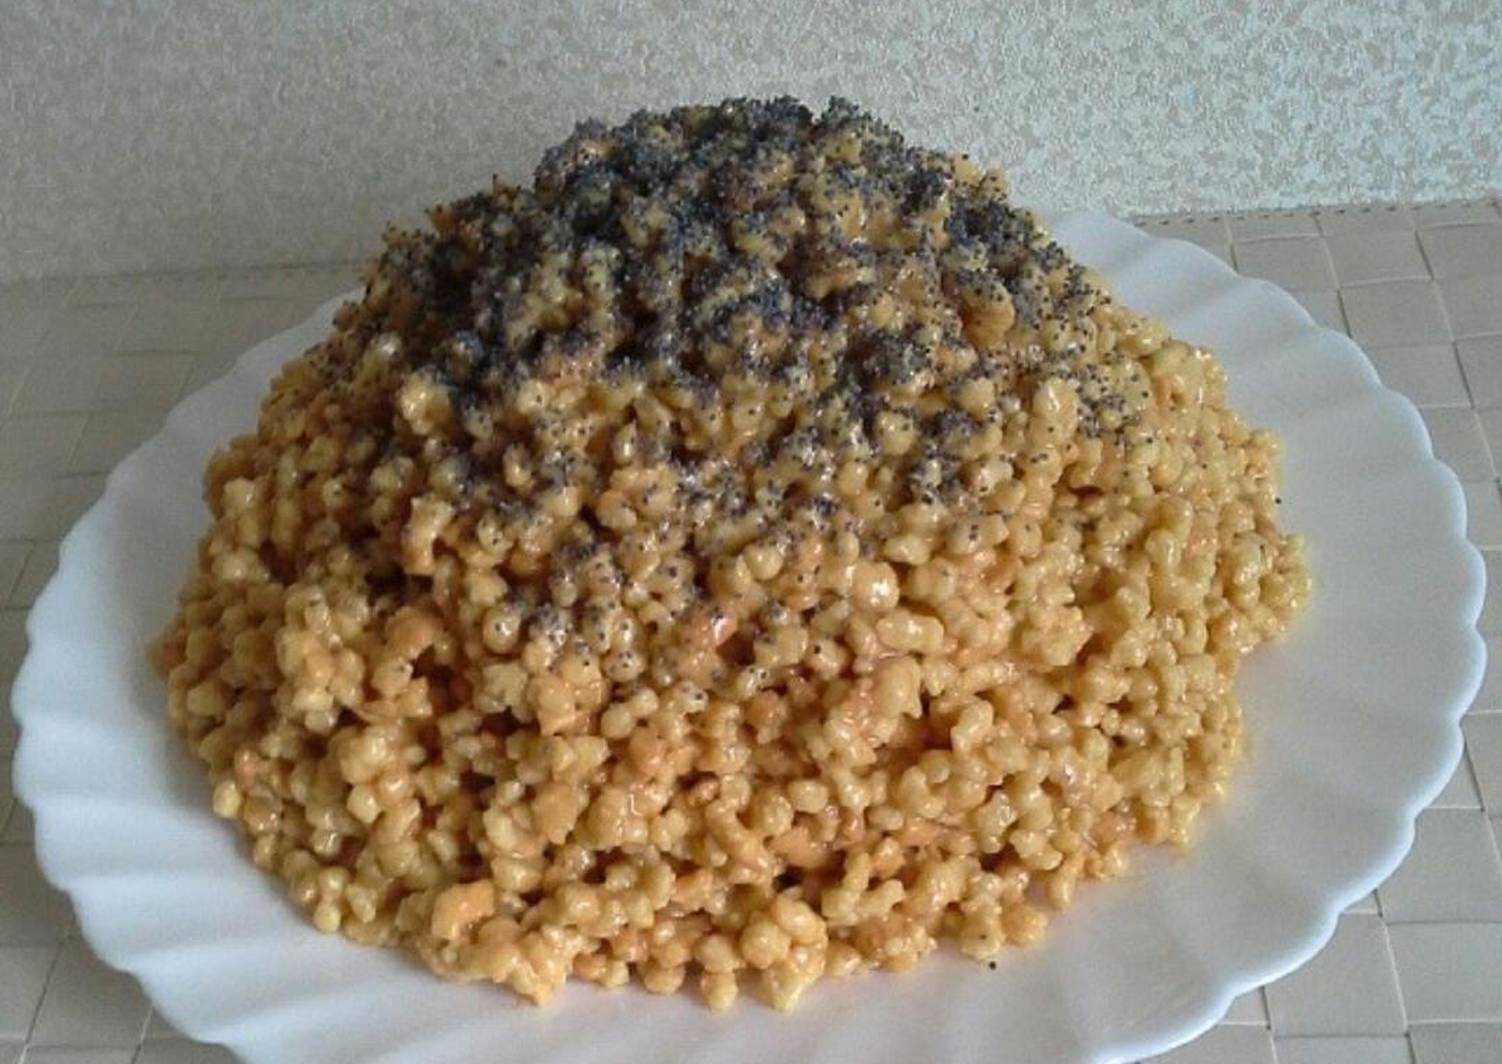 Классический торт муравейник рецепт с фото пошагово в домашних условиях